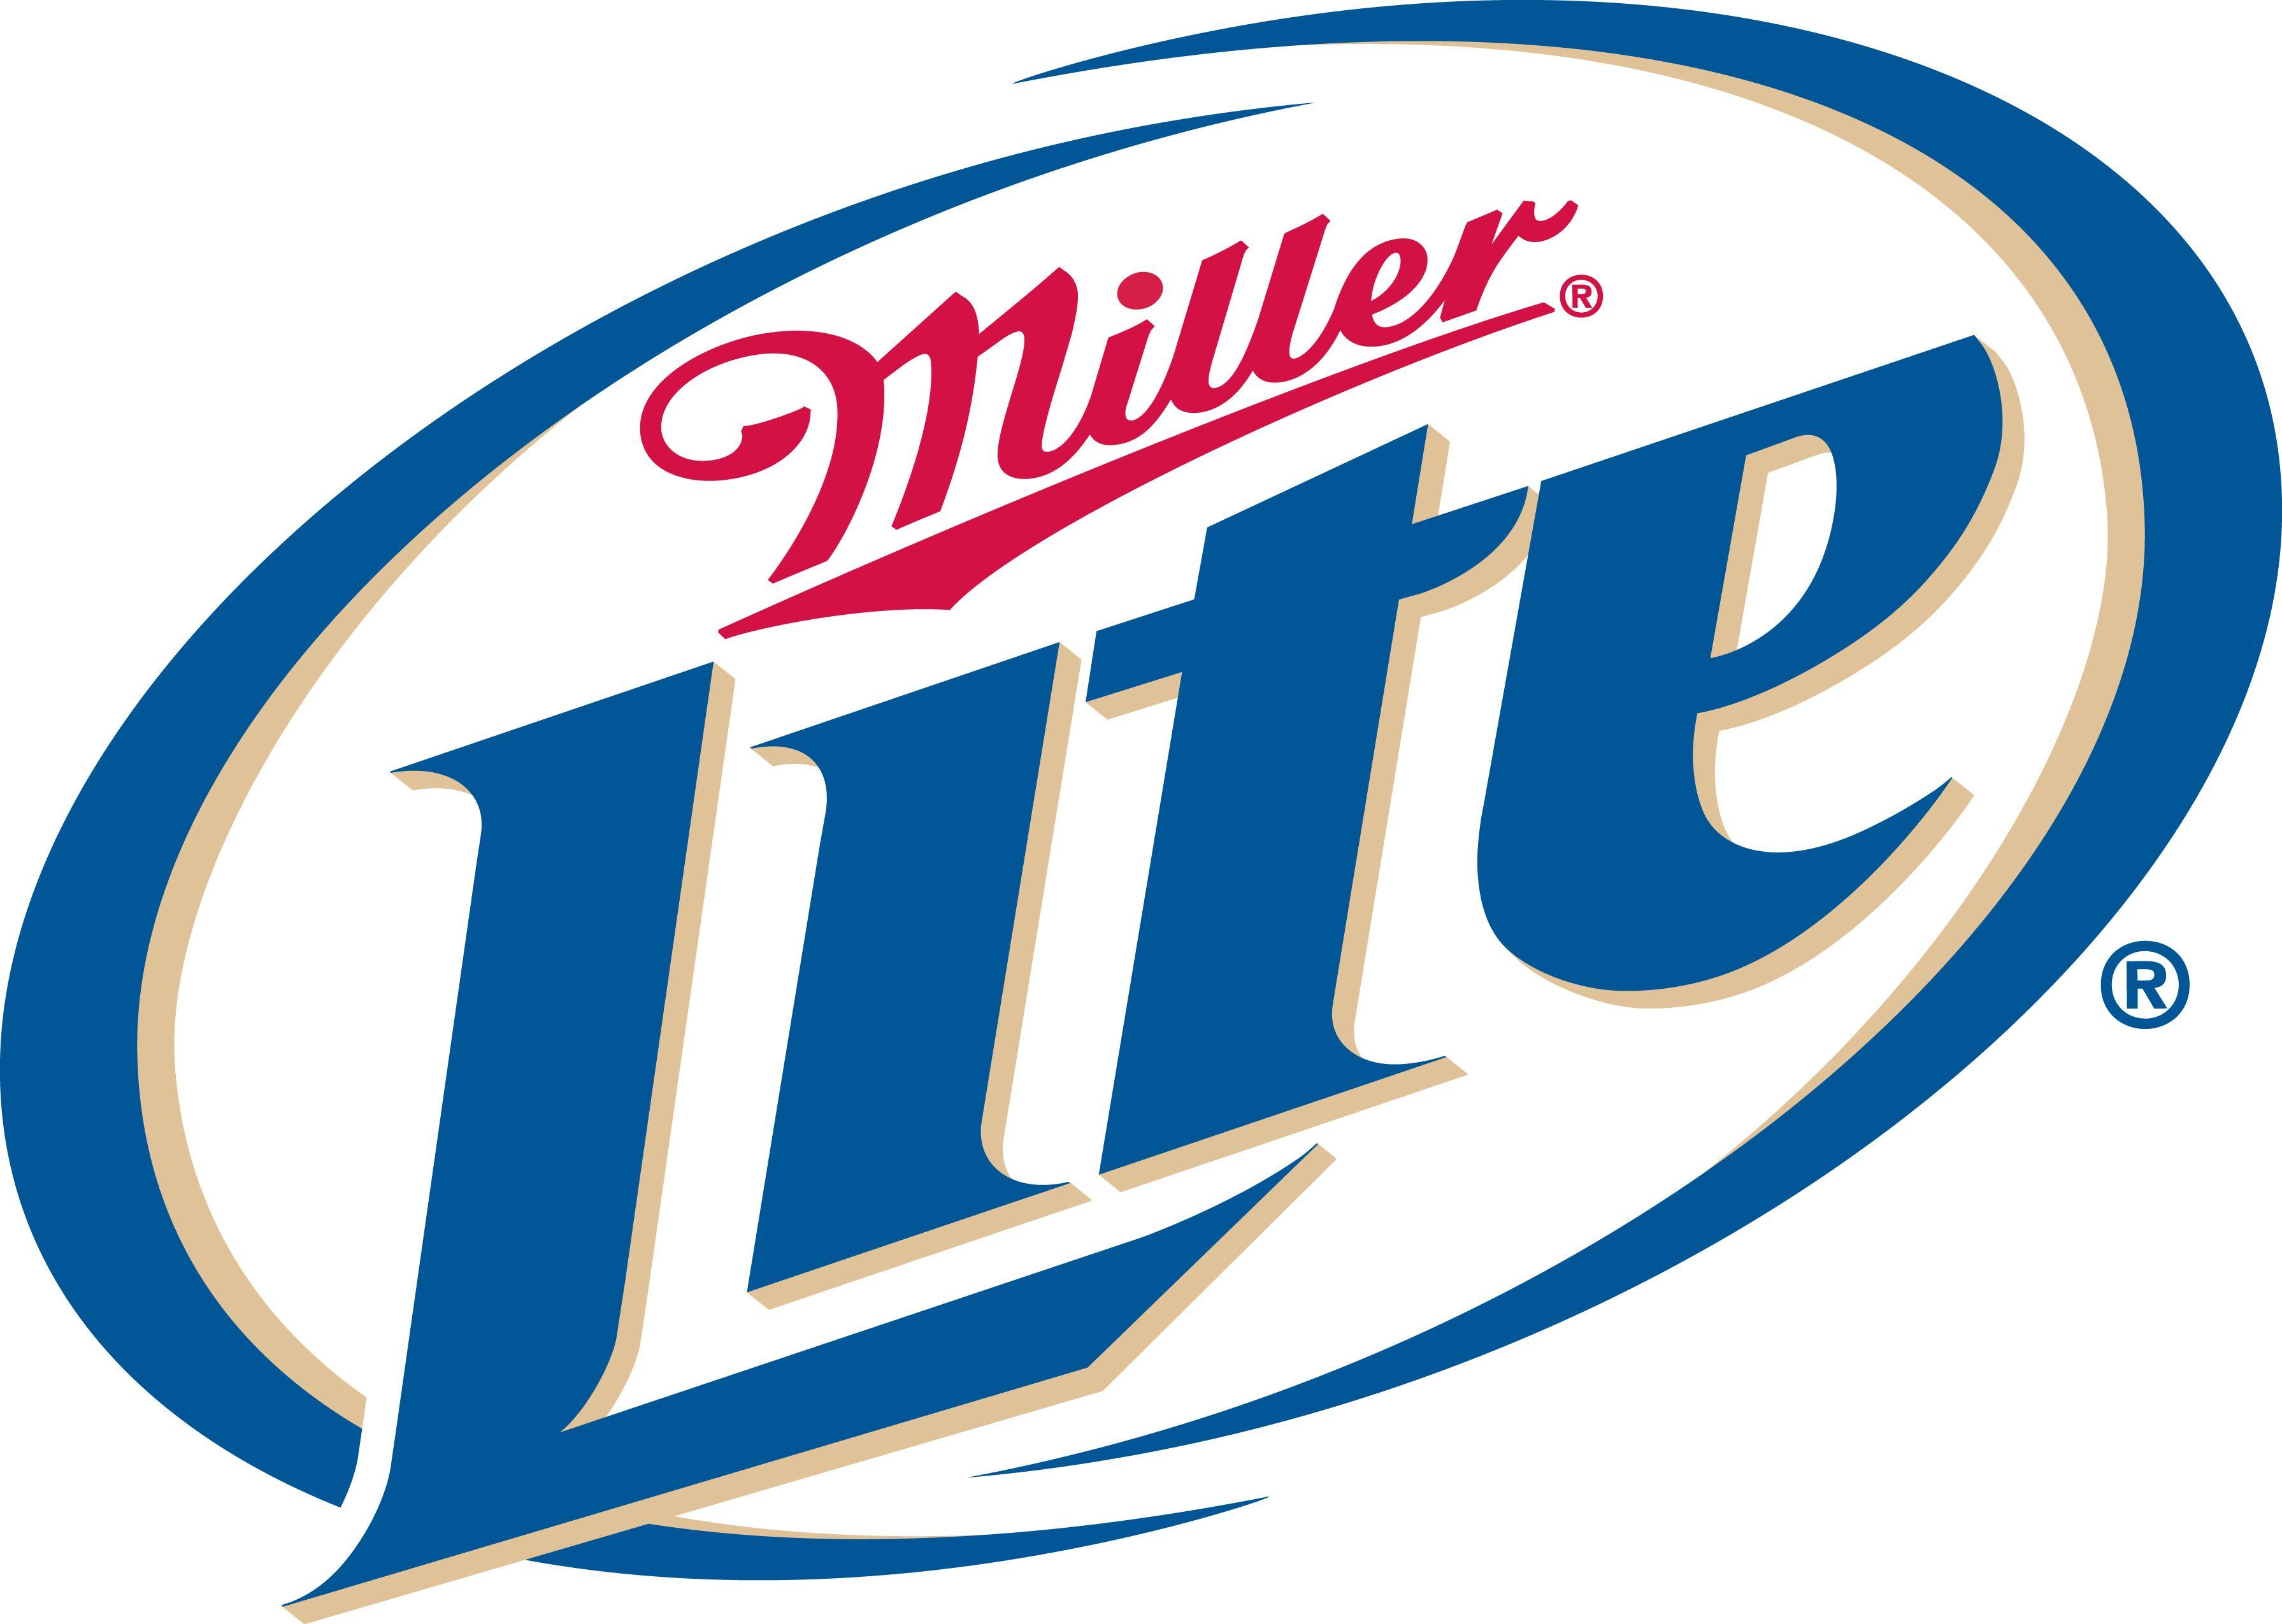 Miller Light Logo - Miller light Logos